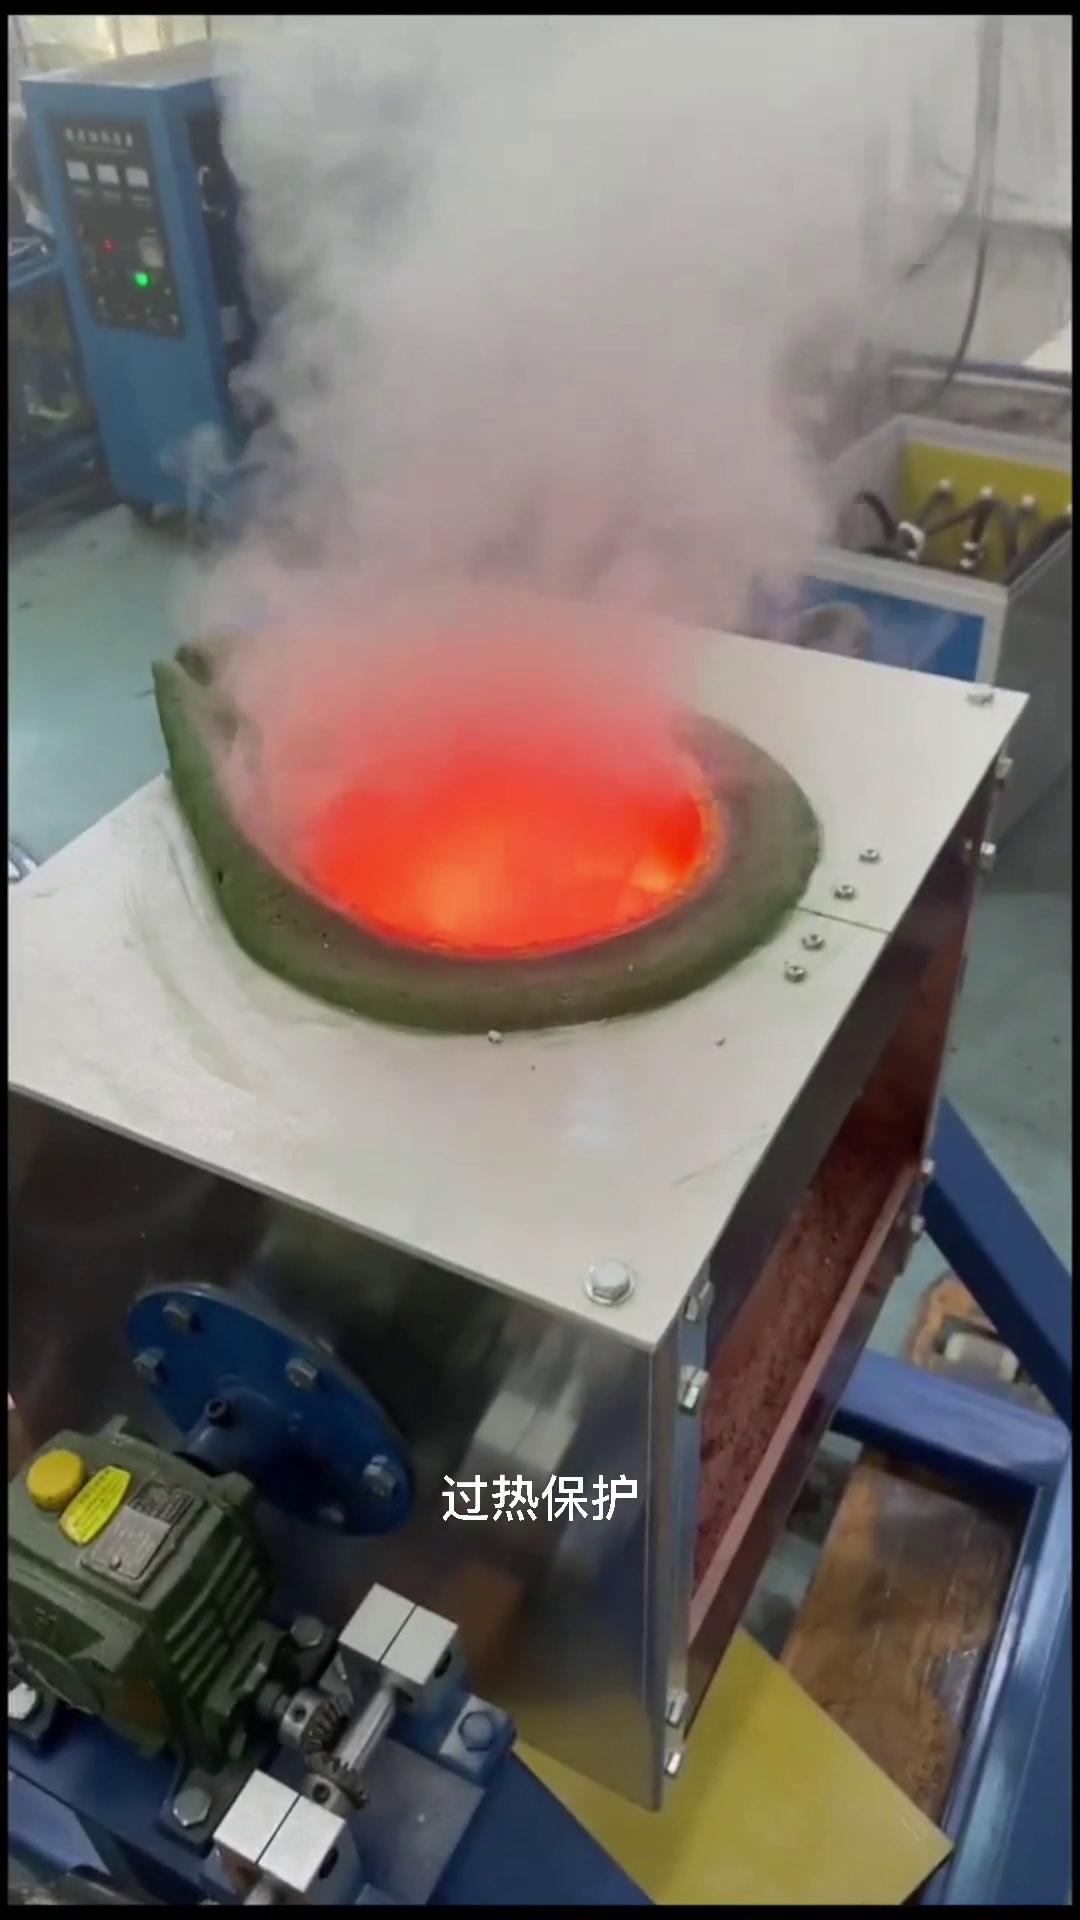 竟然溫度高達2000度,只見金屬放進爐子幾分鐘金屬就熔成液體,這就是中頻熔煉爐